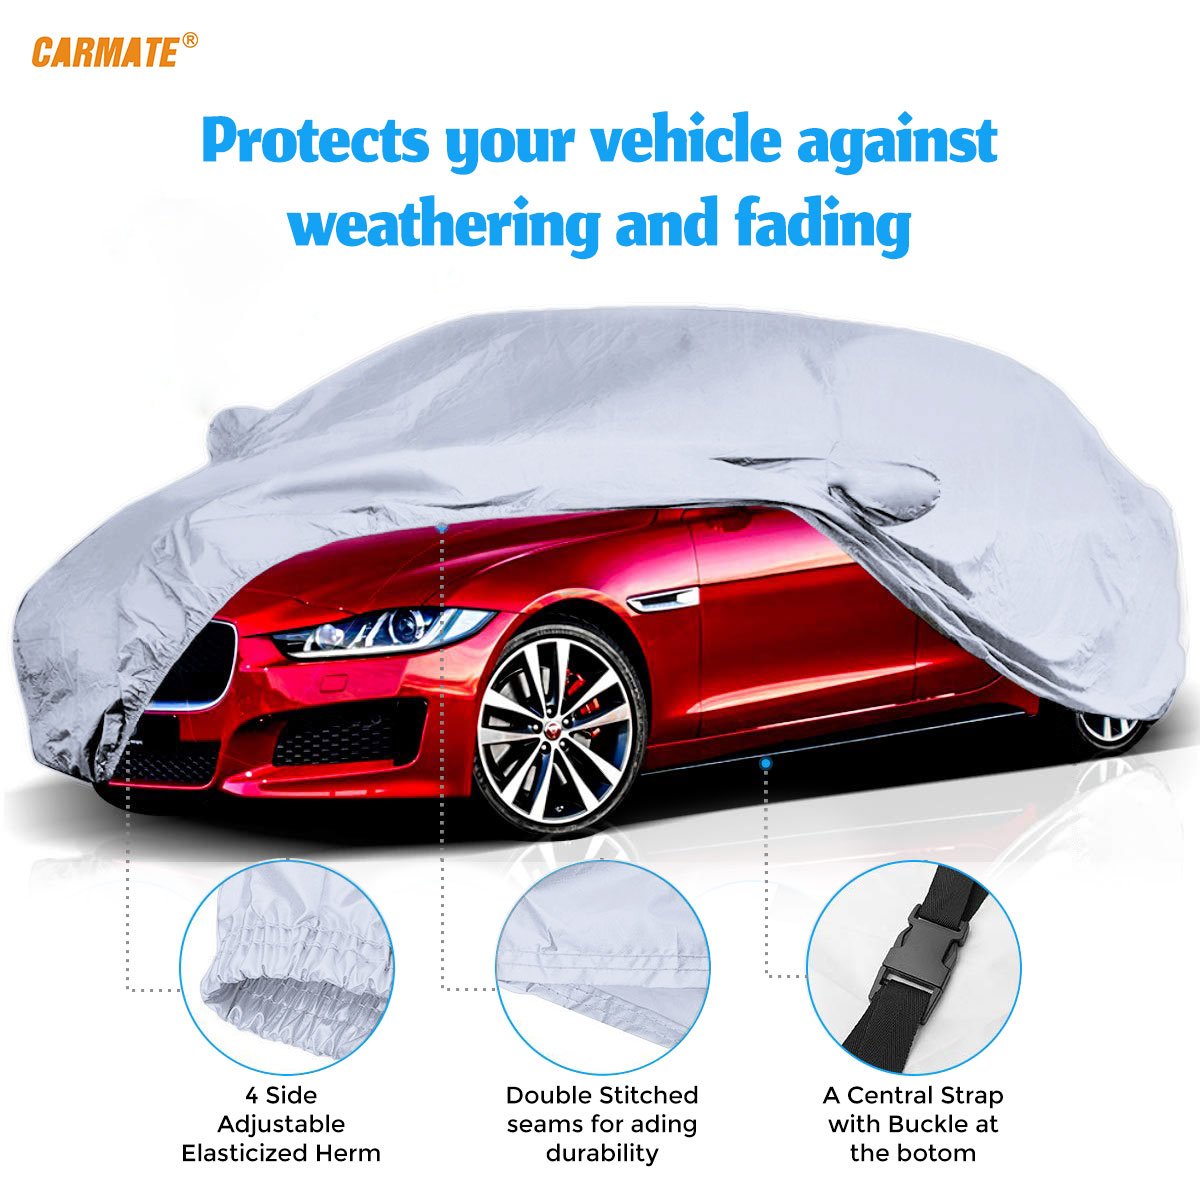 Carmate Premium Car Body Cover Silver Matty (Silver) for  Datsun - Redigo - CARMATE®